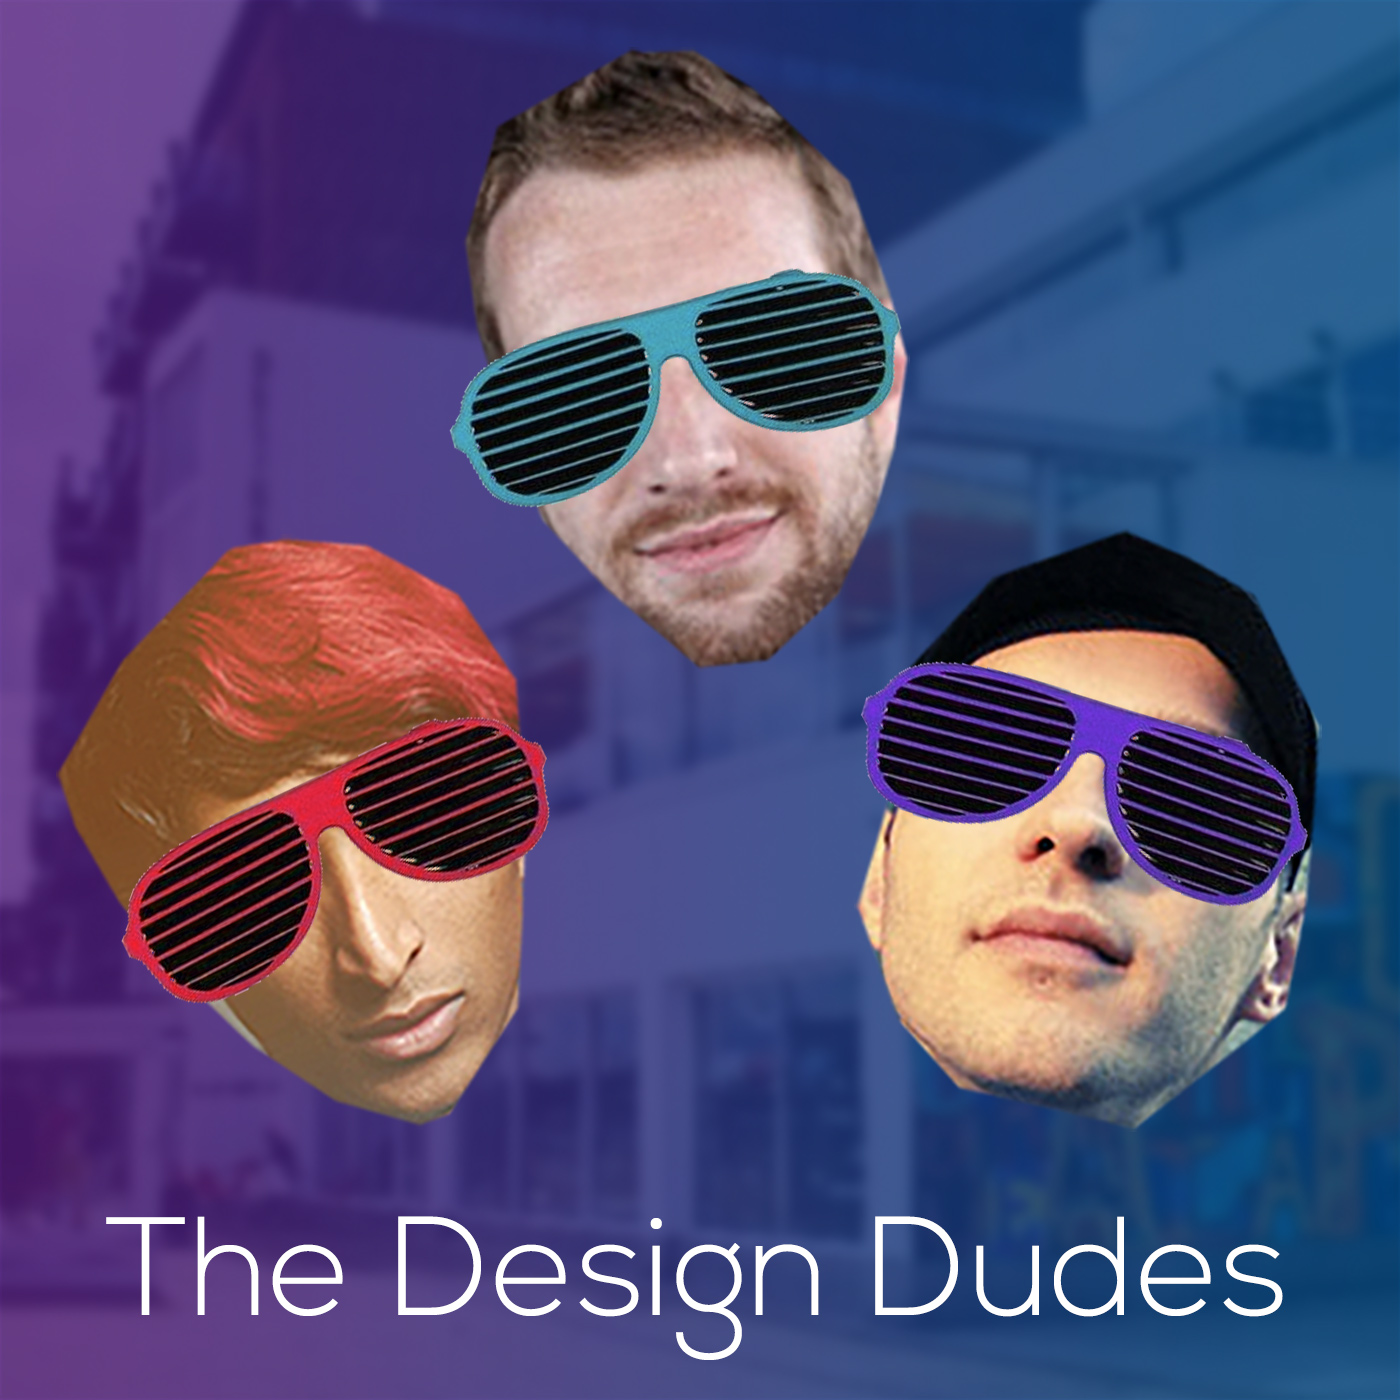 The Design Dudes